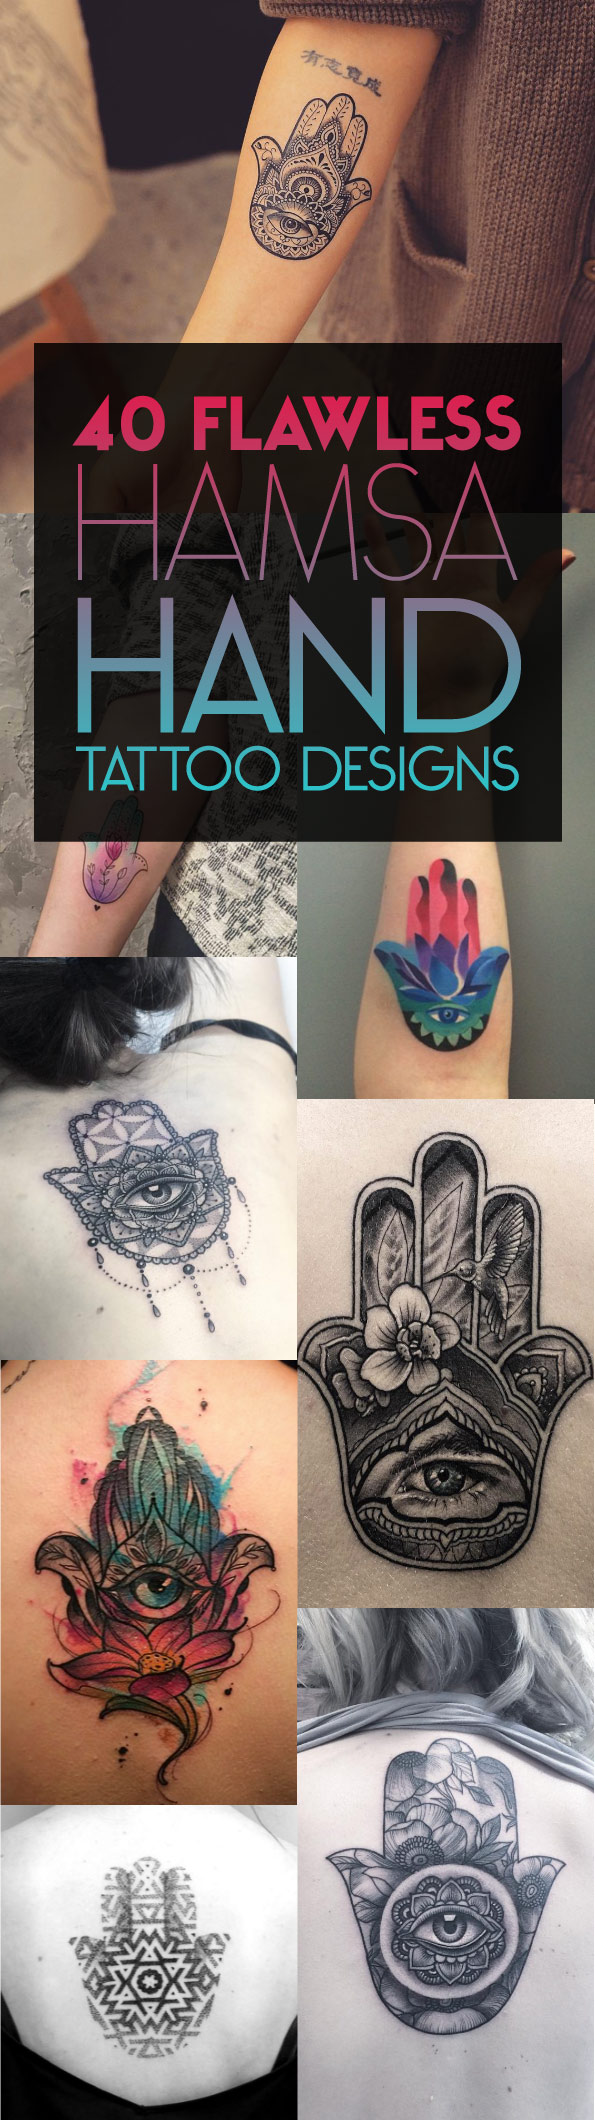 40 Flawless Hamsa Hand Tattoo Designs | TattooBlend